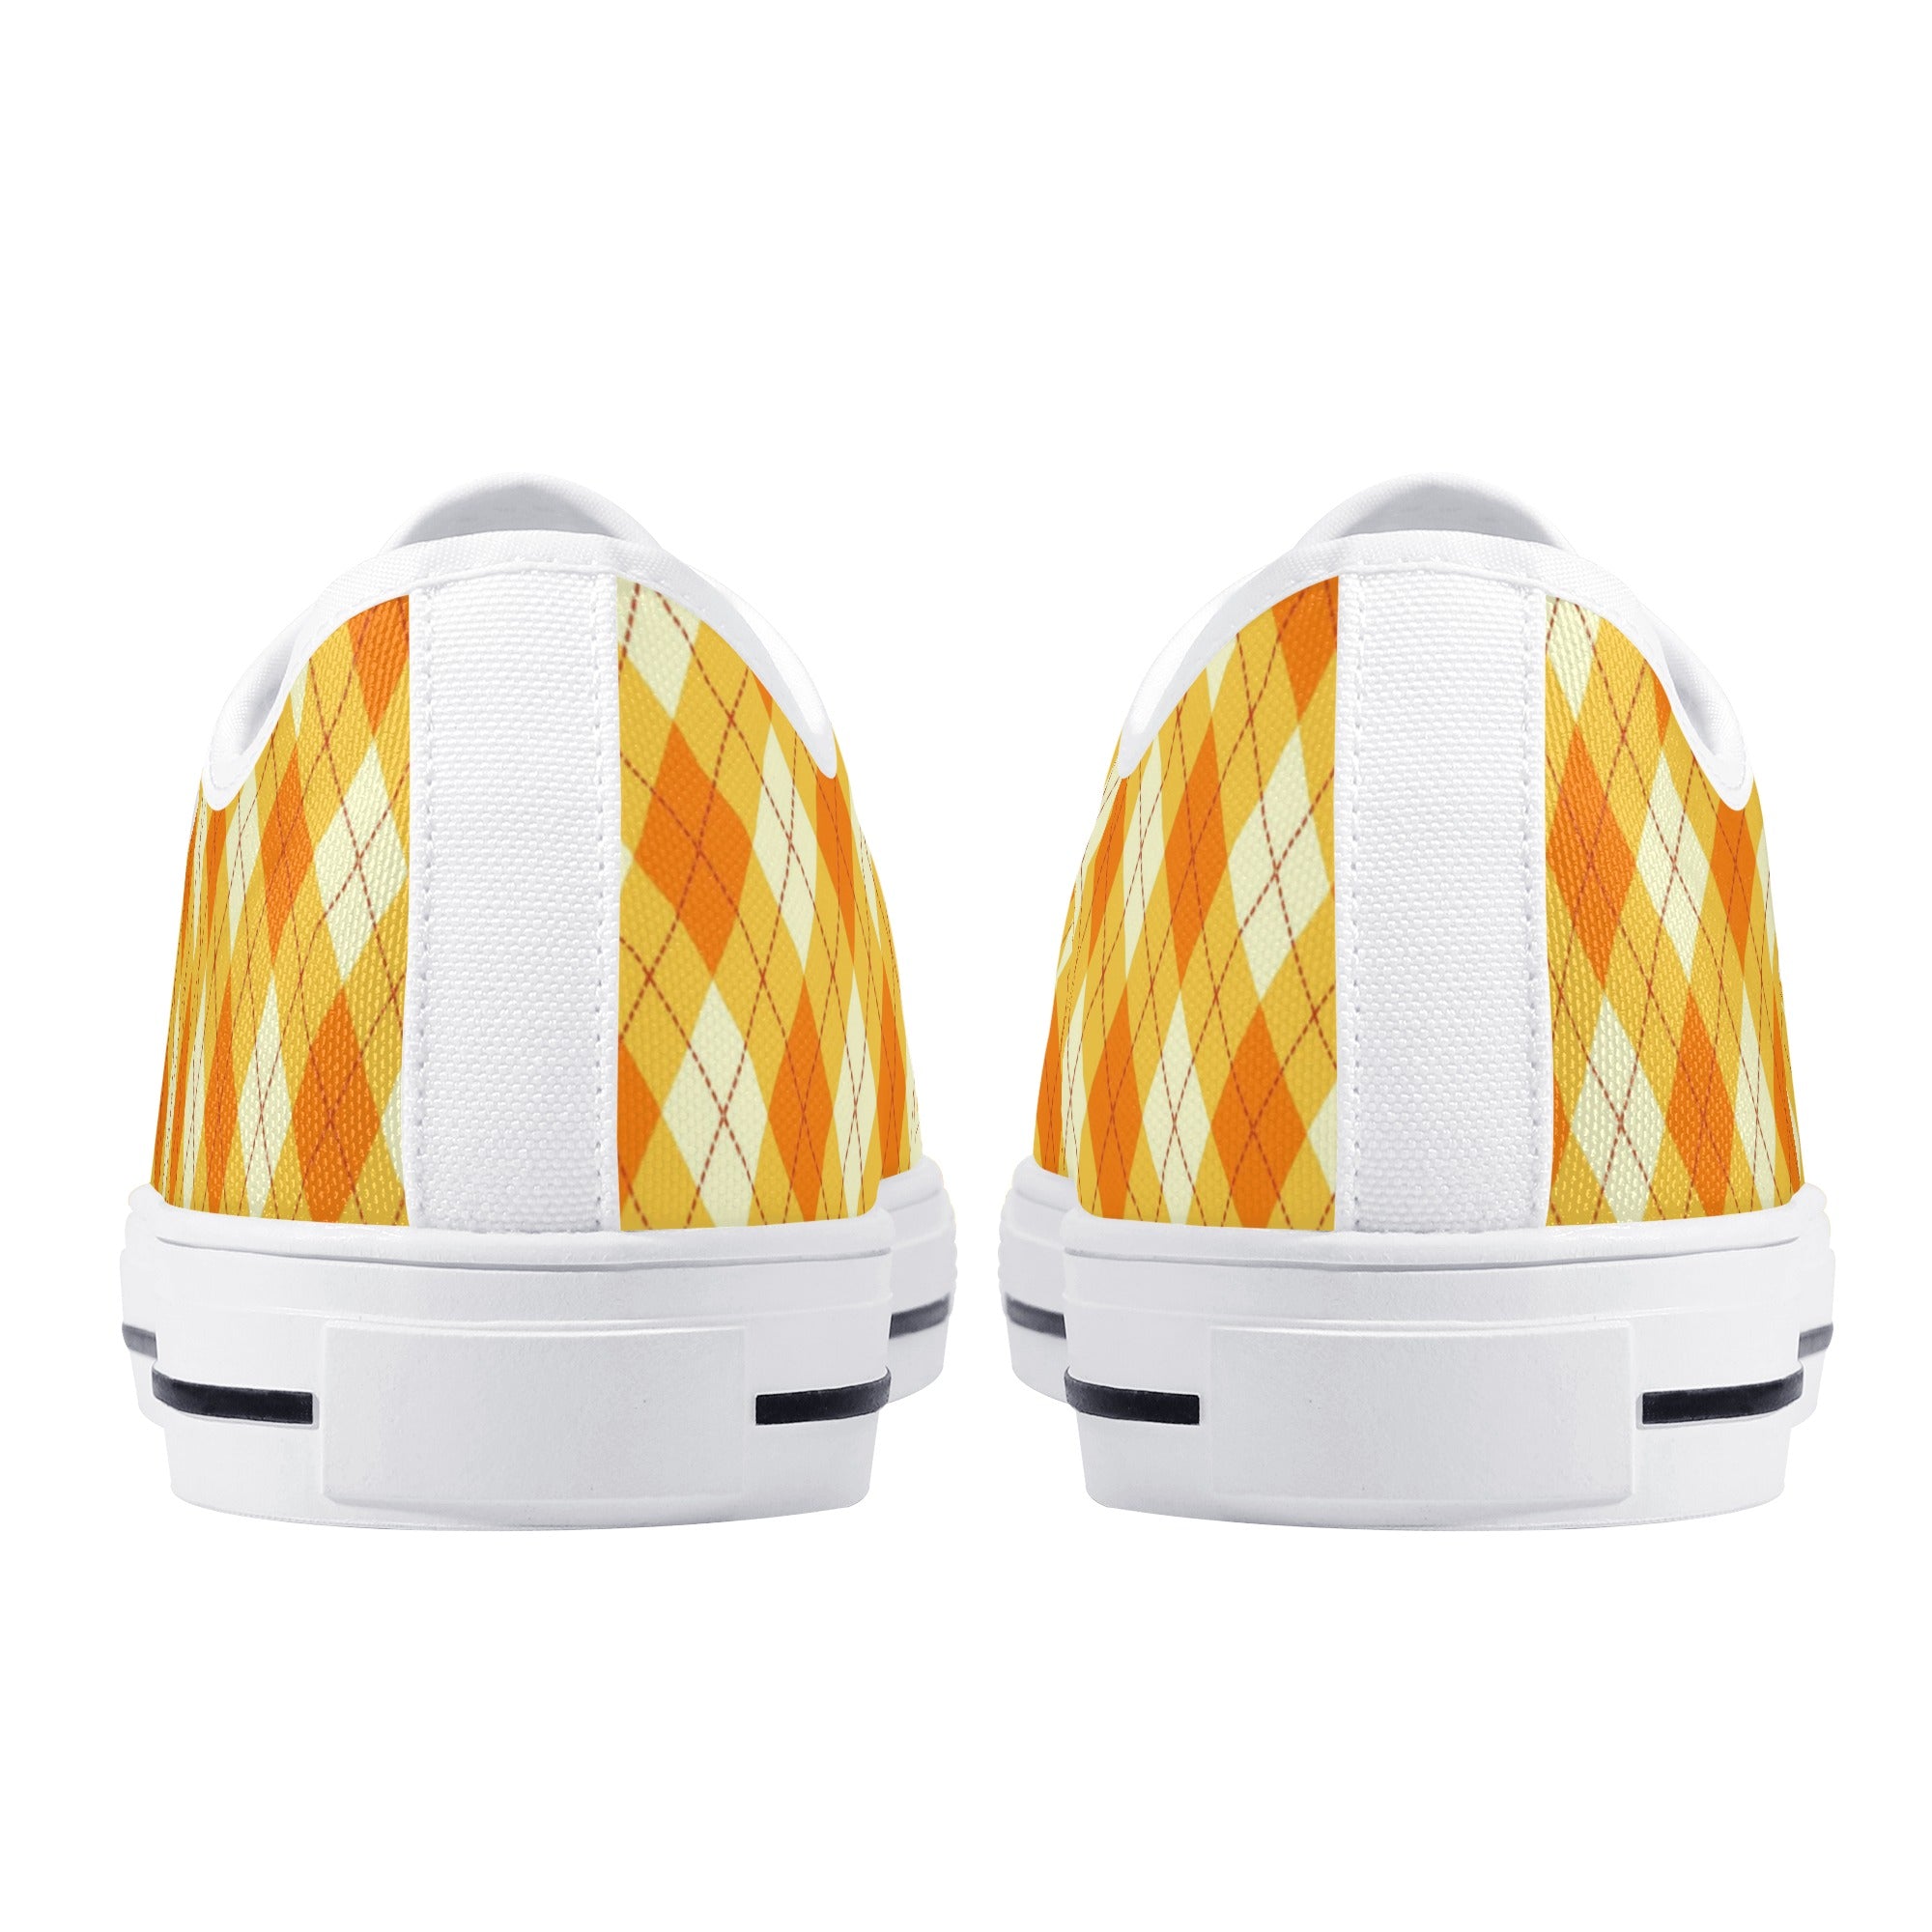 Zapatos de lona ligeros y bajos para mujer - Naranja Argyle